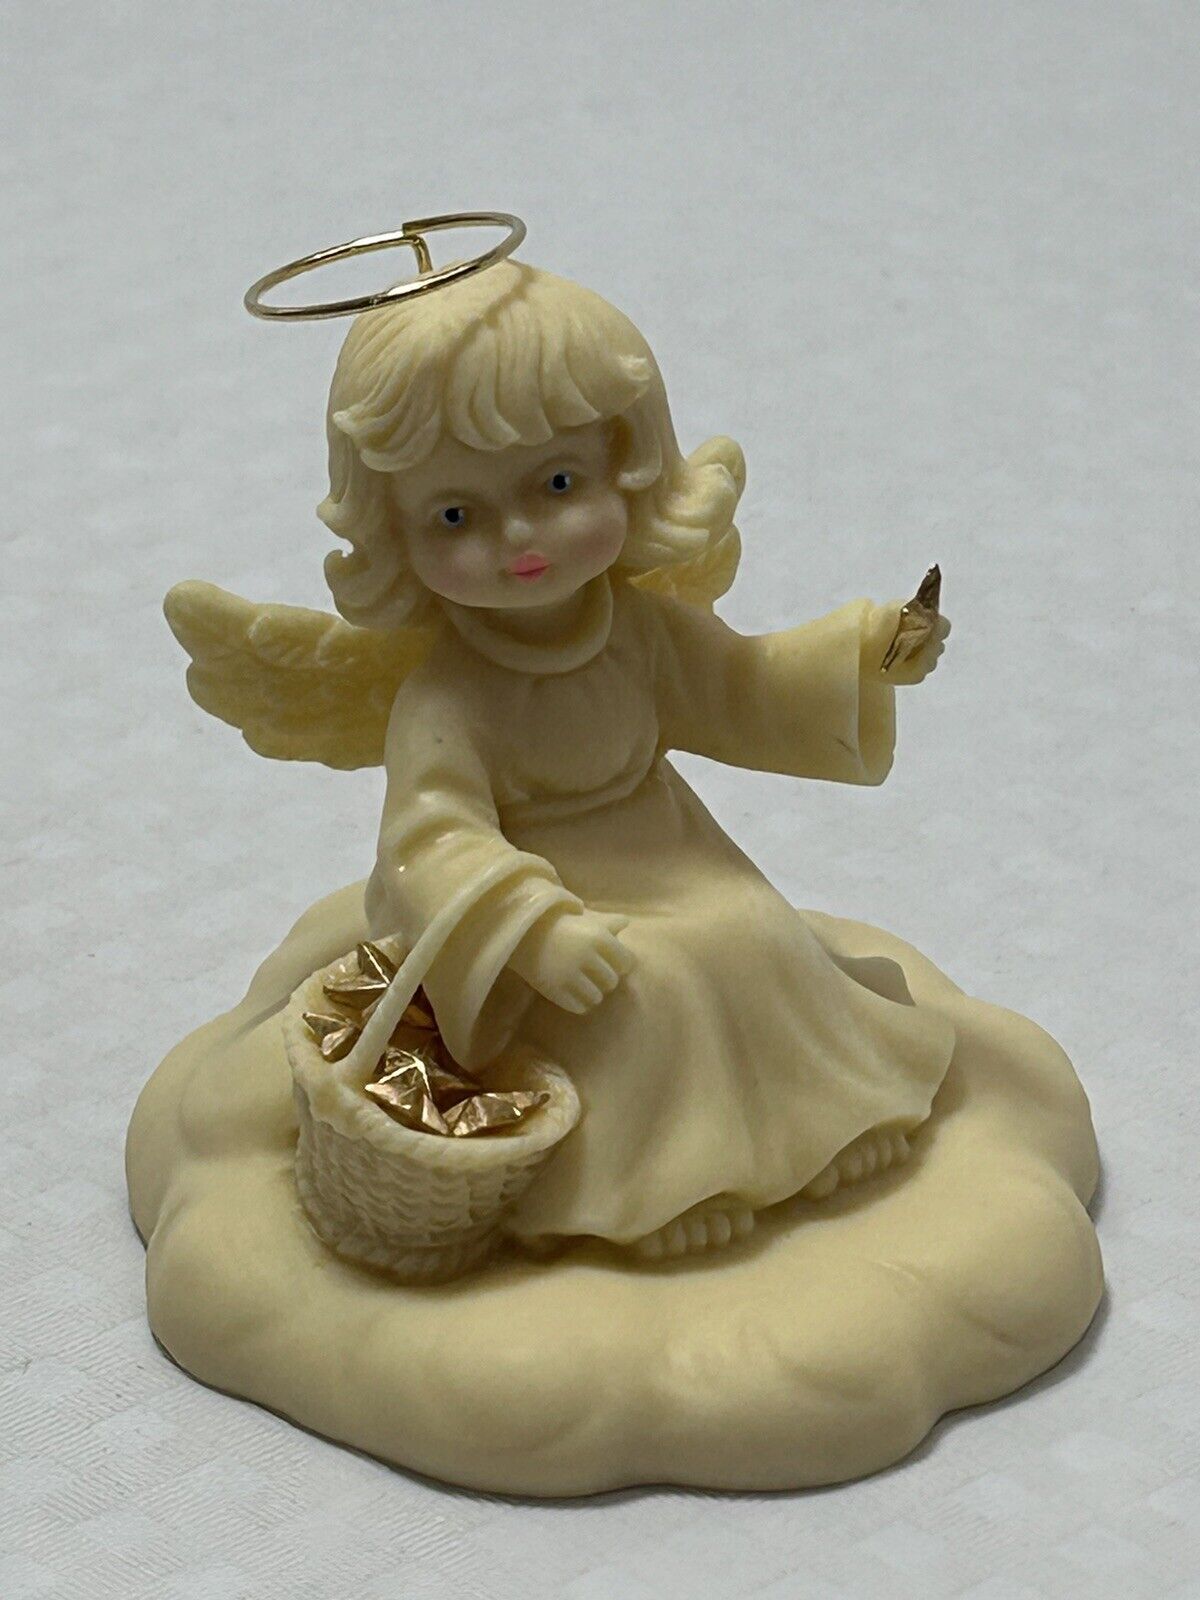 Studio Heavenly Angels BASKET FULL OF LOVE by Tom Rubel 1994 Figurine